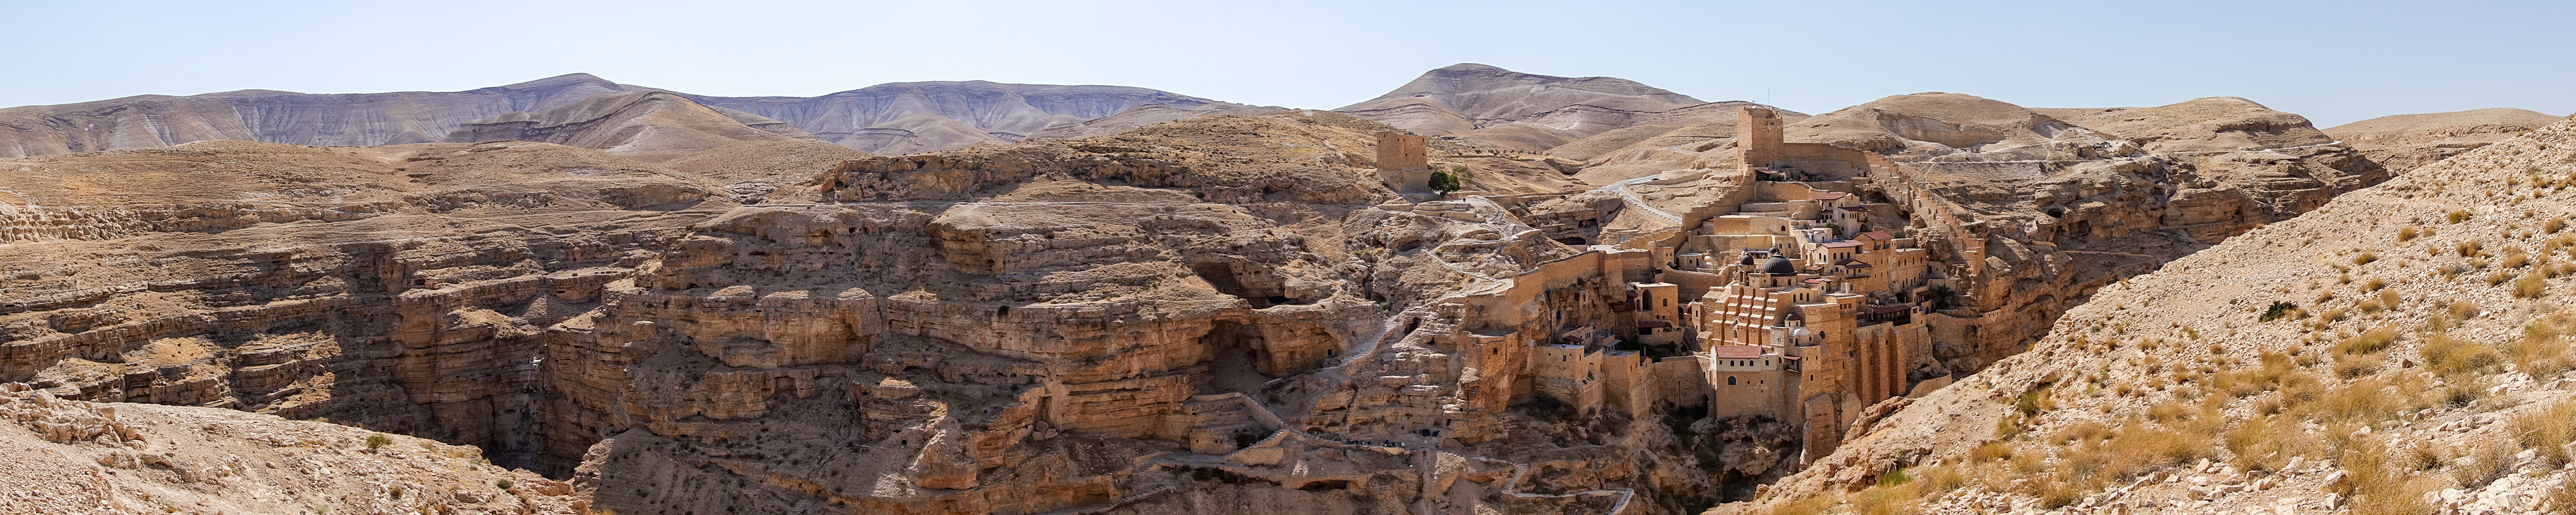 기드론 골짜기와 마르 사바 수도원